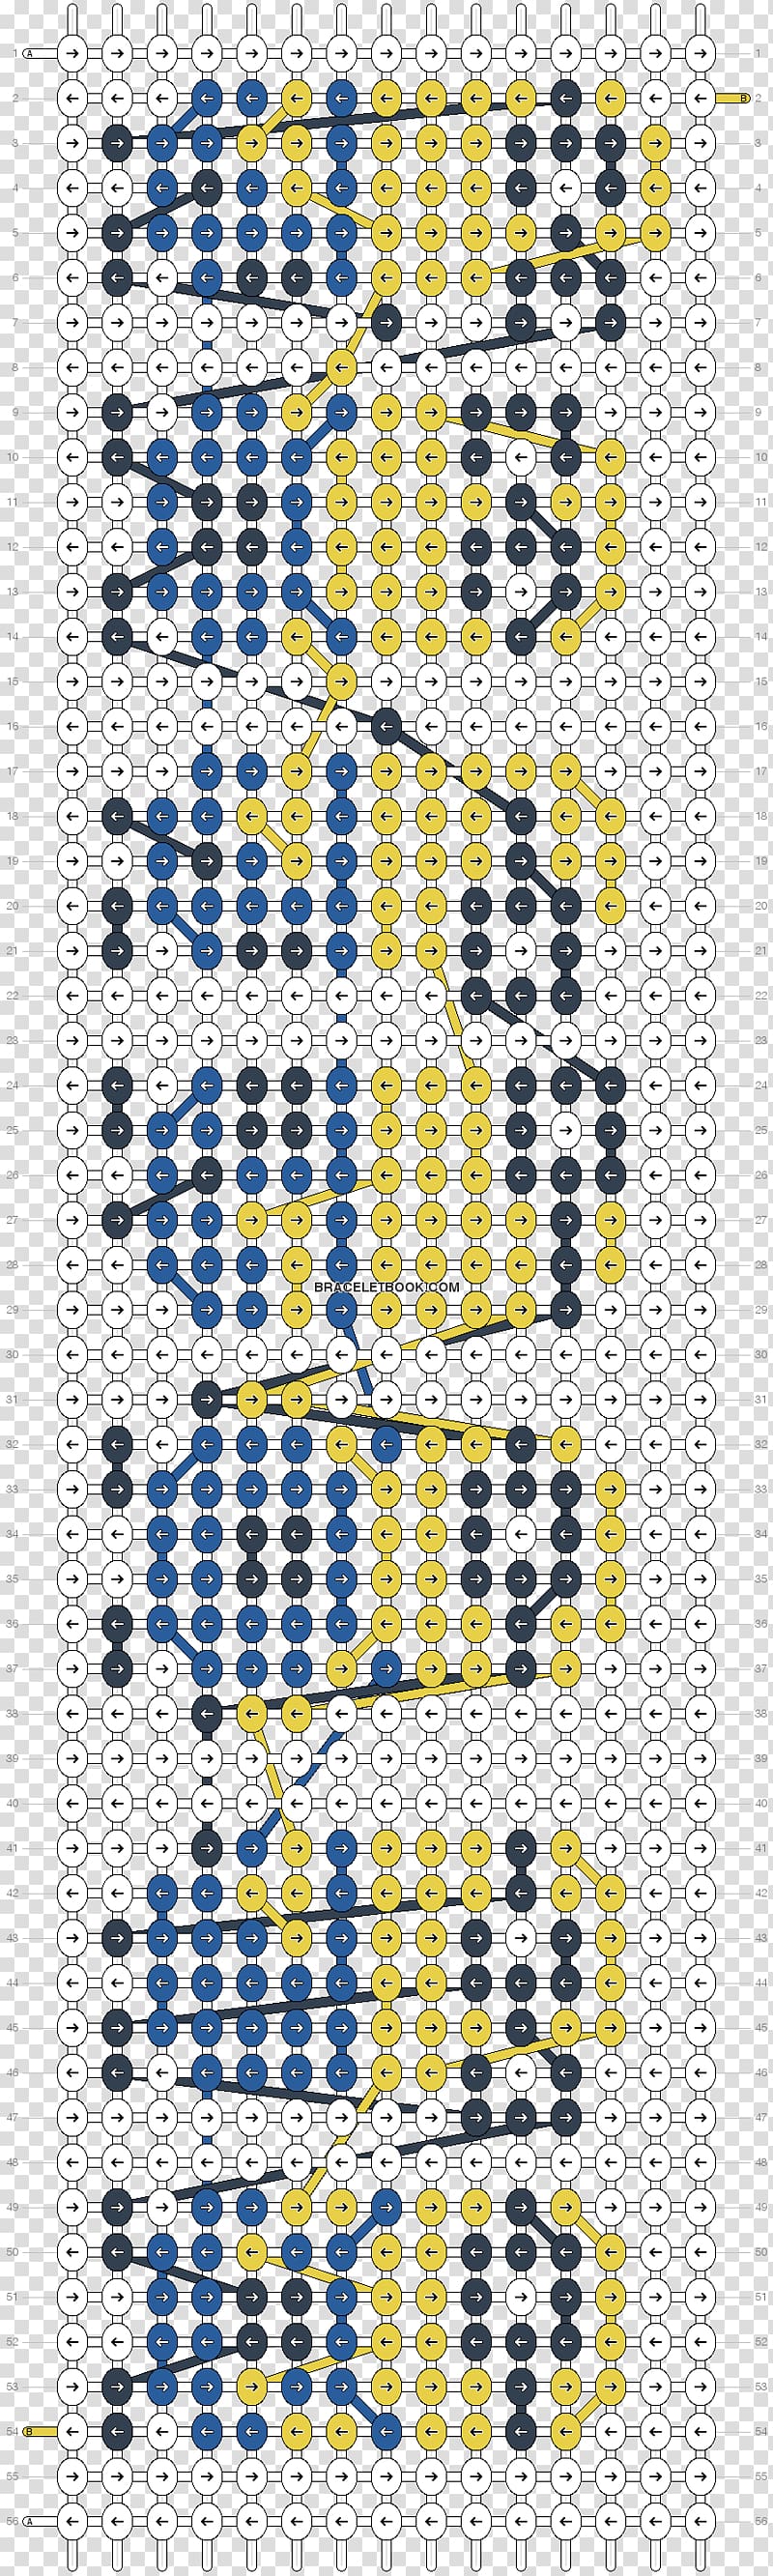 Free cross stitch pattern 